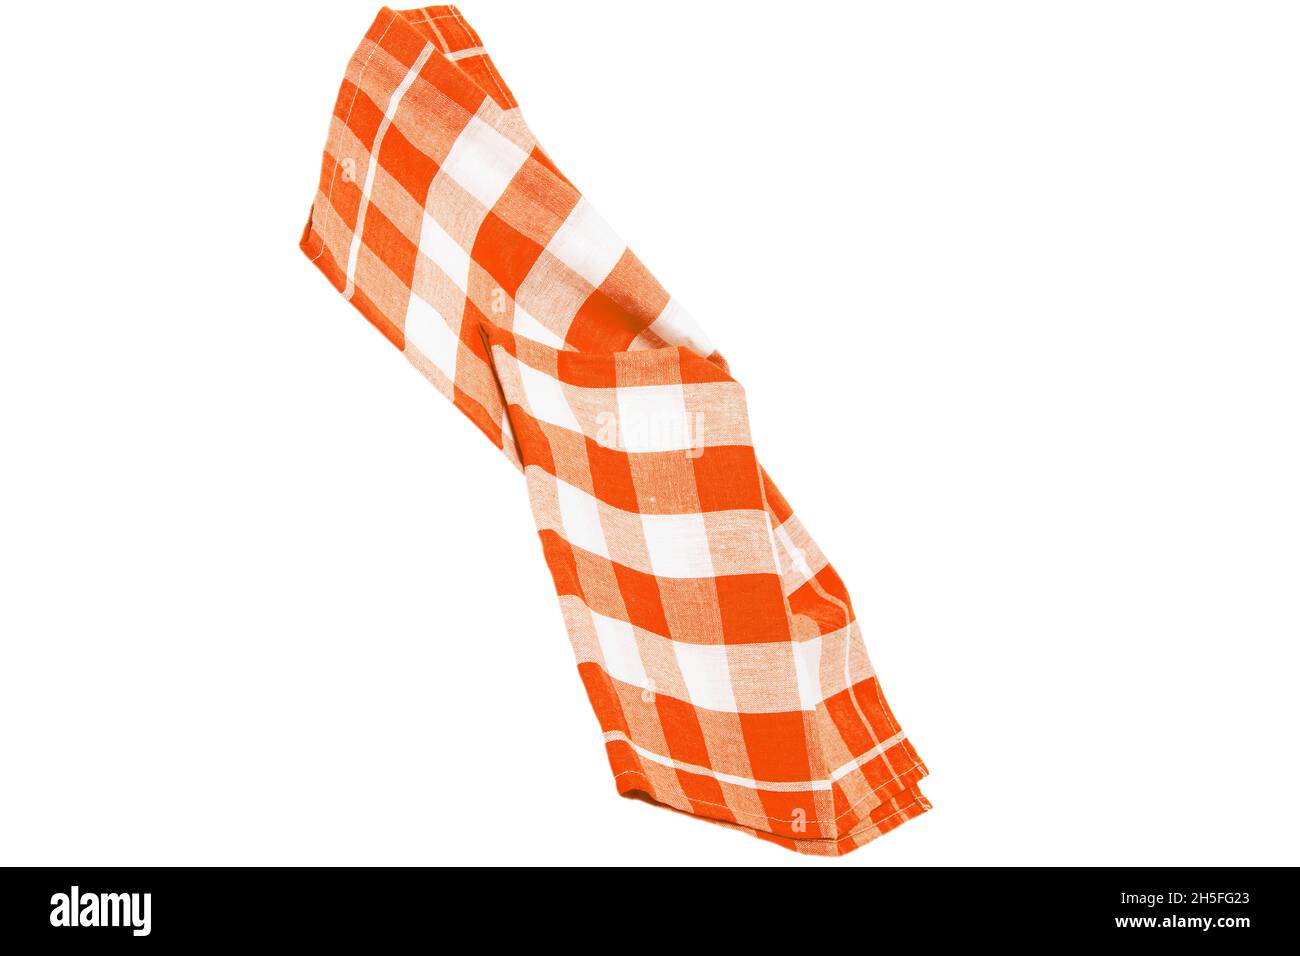 Nahaufnahme einer orangen- und weiß karierten Serviette oder Tischdecke, isoliert auf weißem Hintergrund. Küchenzubehör. Stockfoto